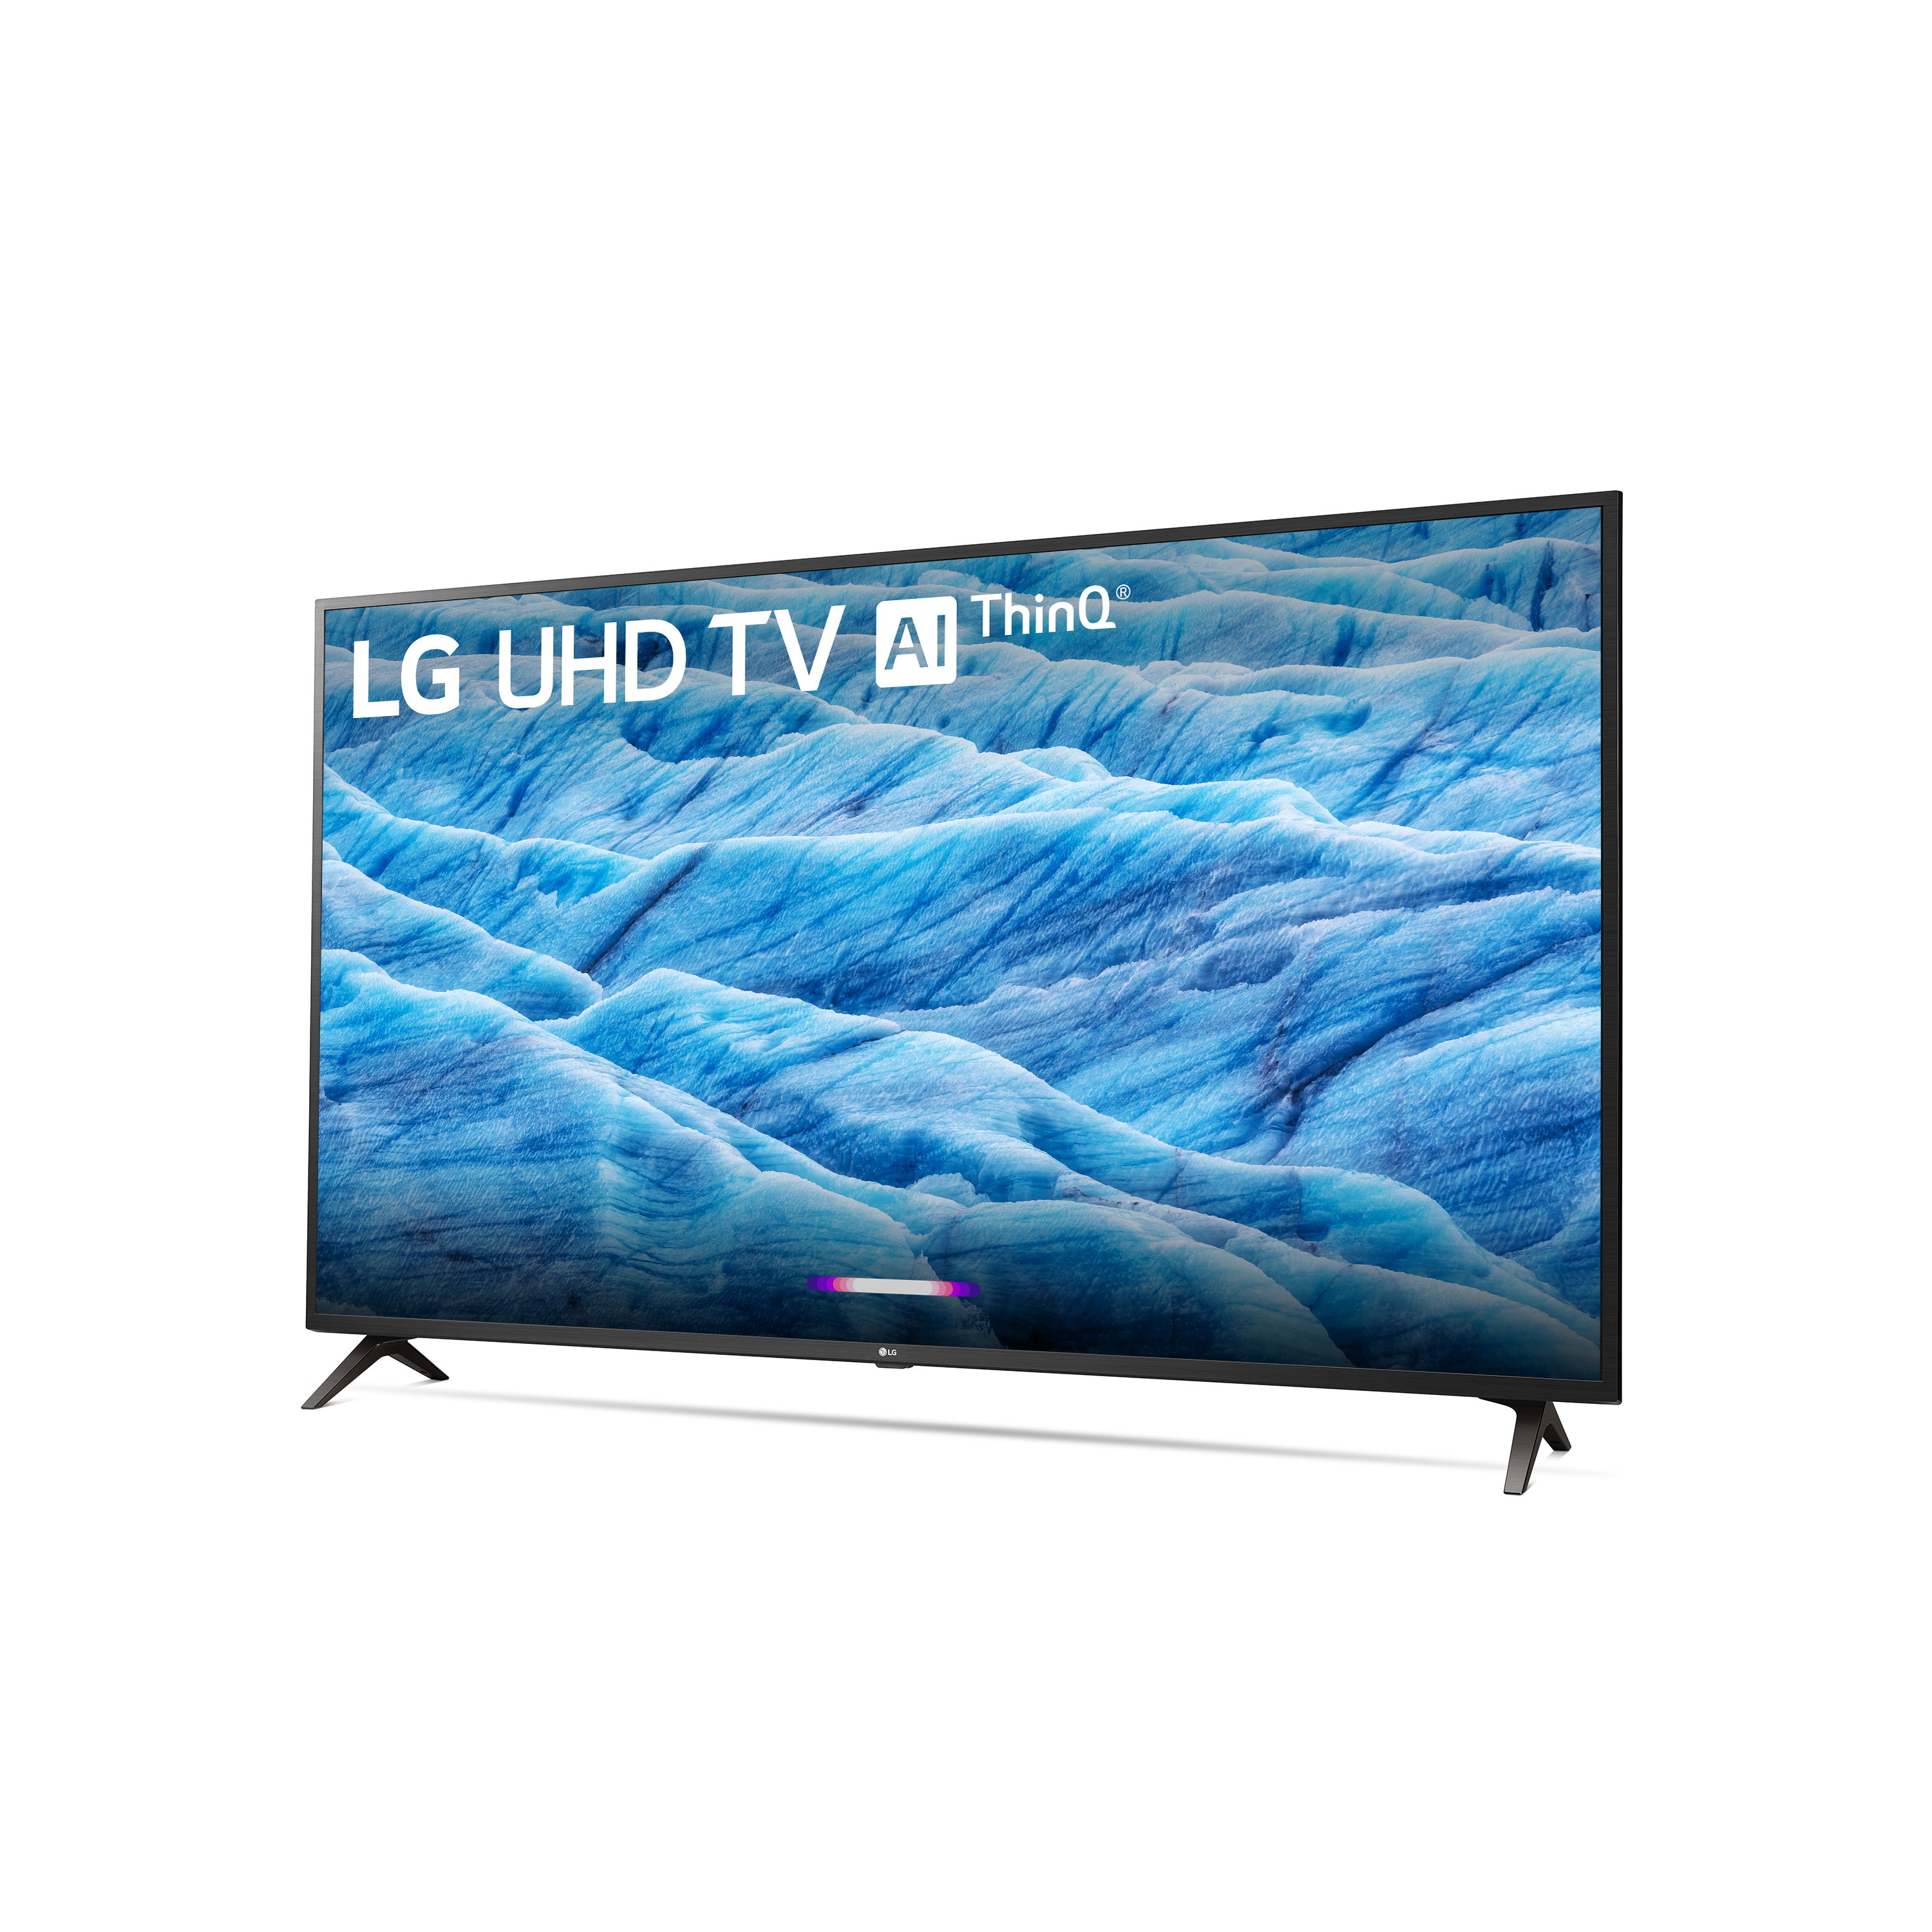 LG 65" Class 4K (2160P) Ultra HD Smart LED HDR TV 65UM7300PUA 2019 Model - image 5 of 14